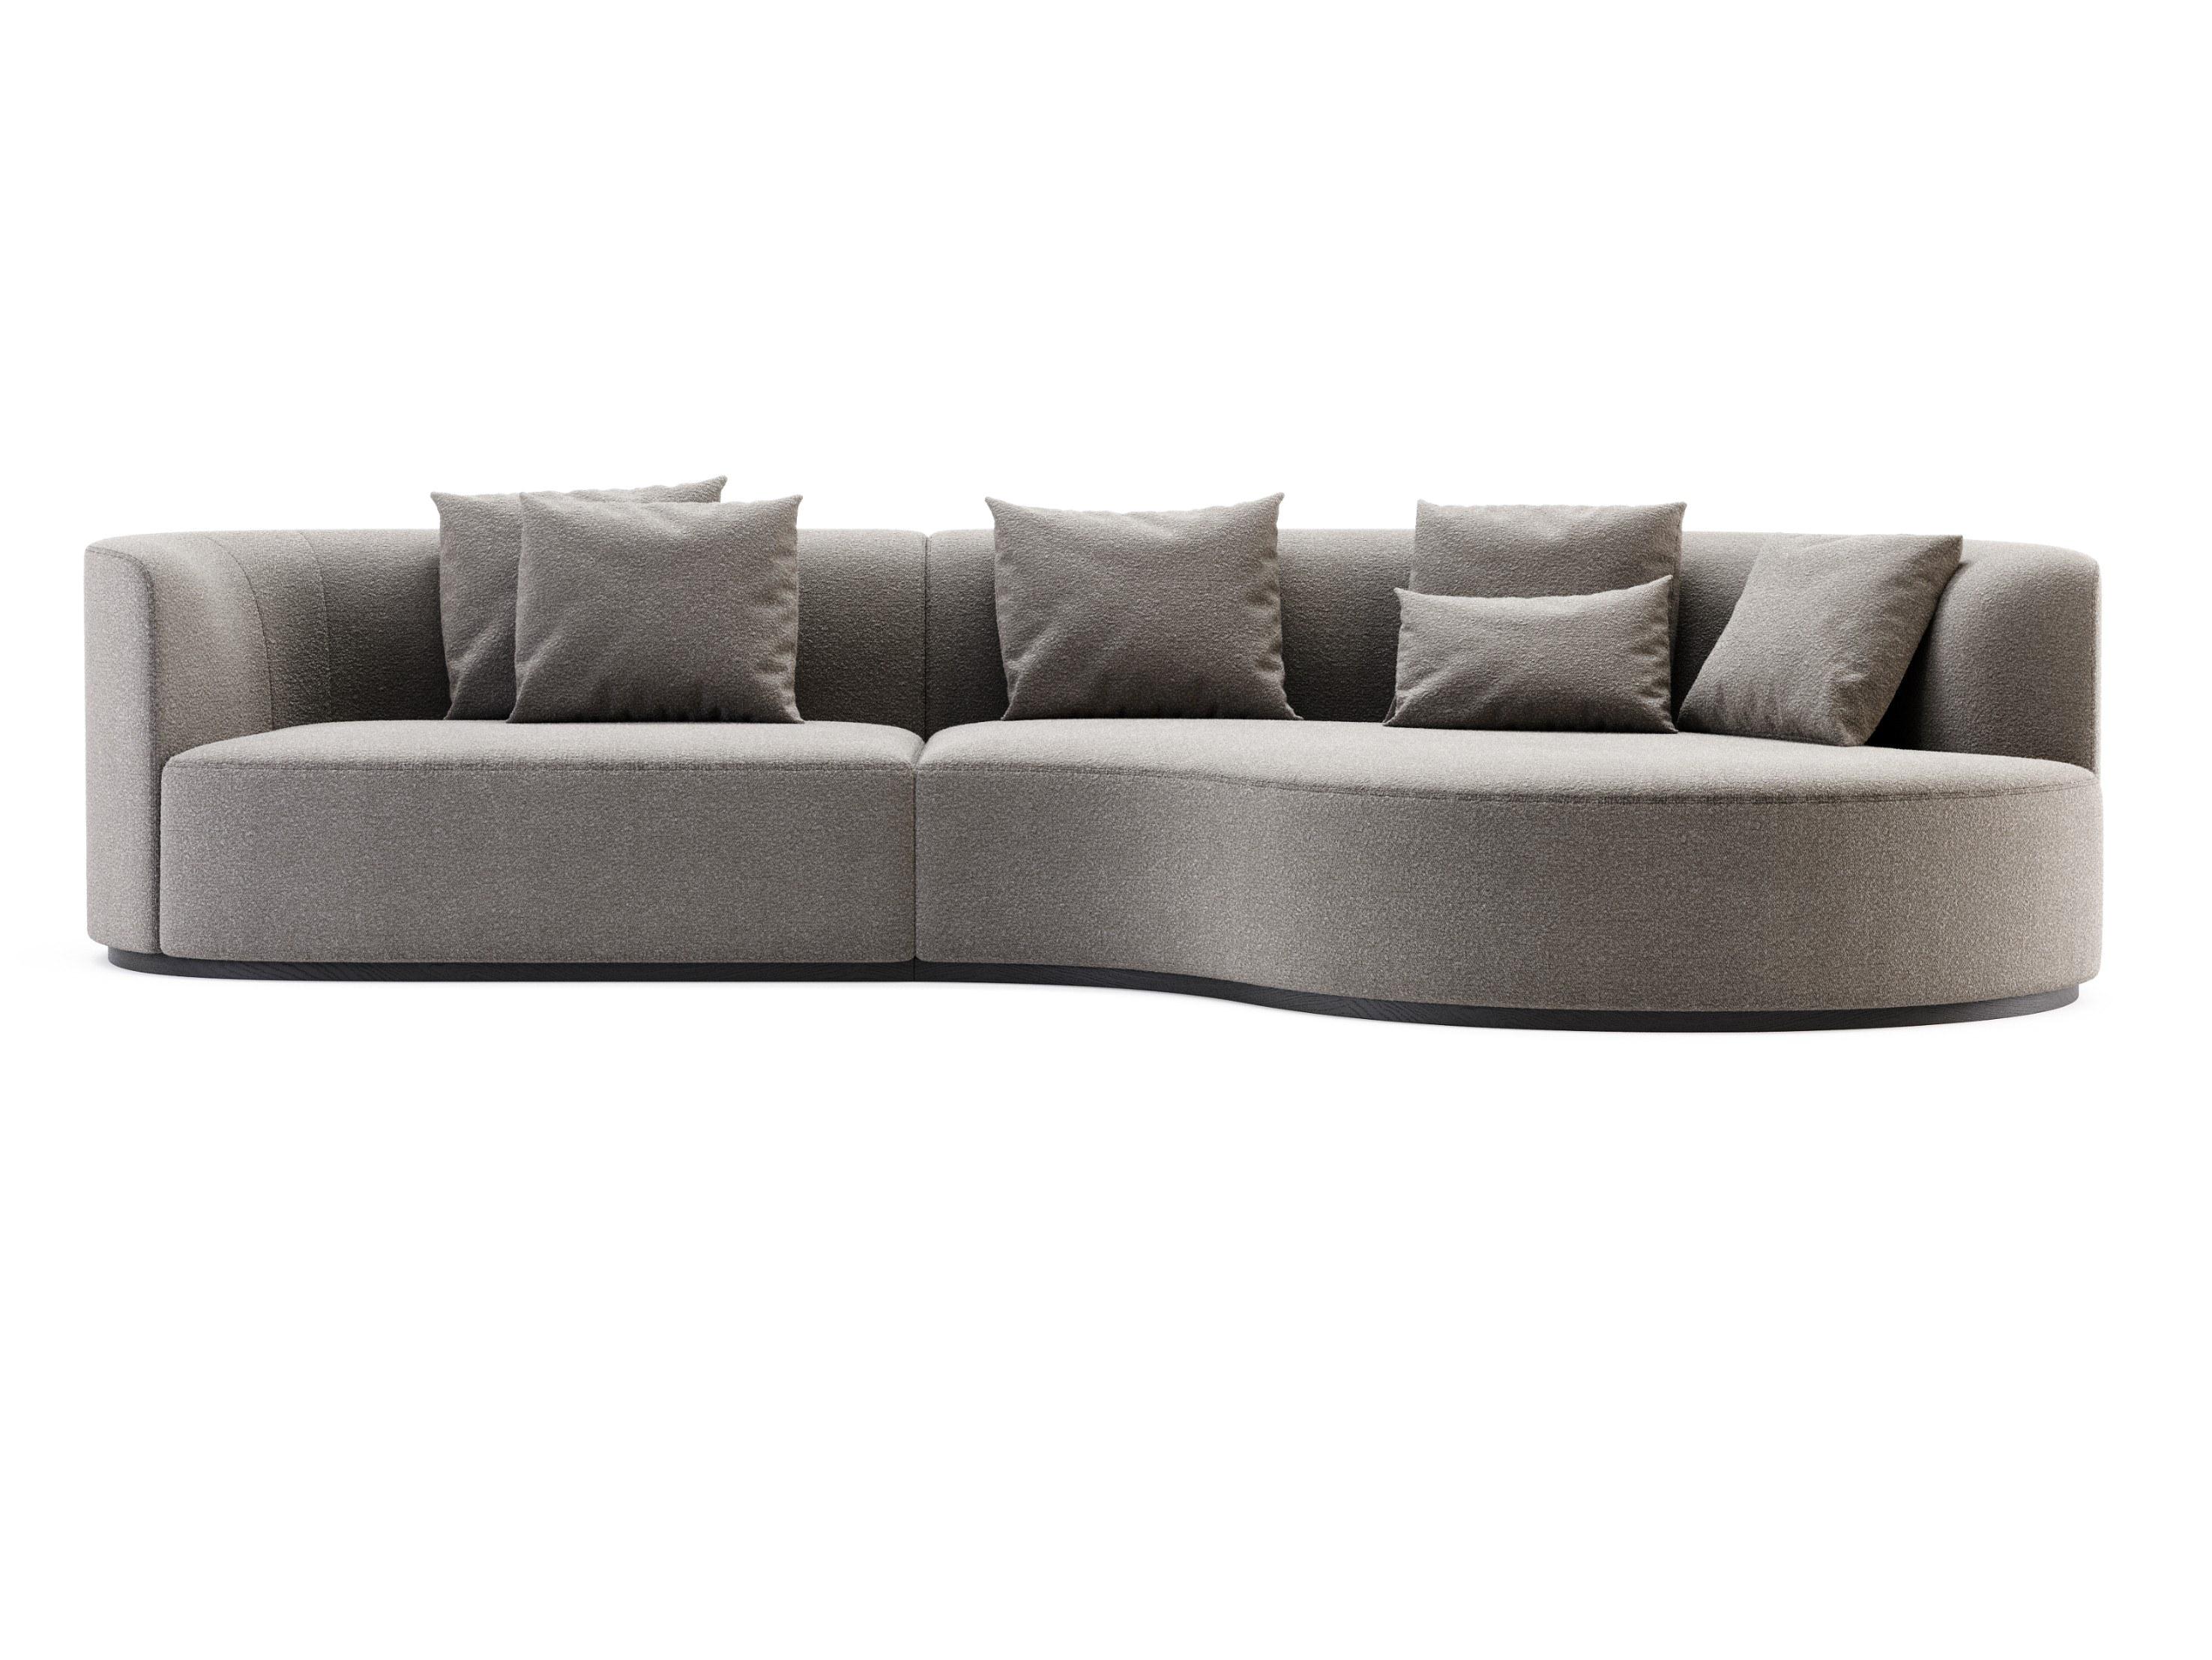 Maßgeschneidertes Sofa mit tief geschwungener Liege, das in einer Auswahl an luxuriösen, weichen Stoffen angeboten wird. 
Der Sockel ist aus Metall oder Holz in verschiedenen Farben und Ausführungen erhältlich.
Das Metall ist polierter oder